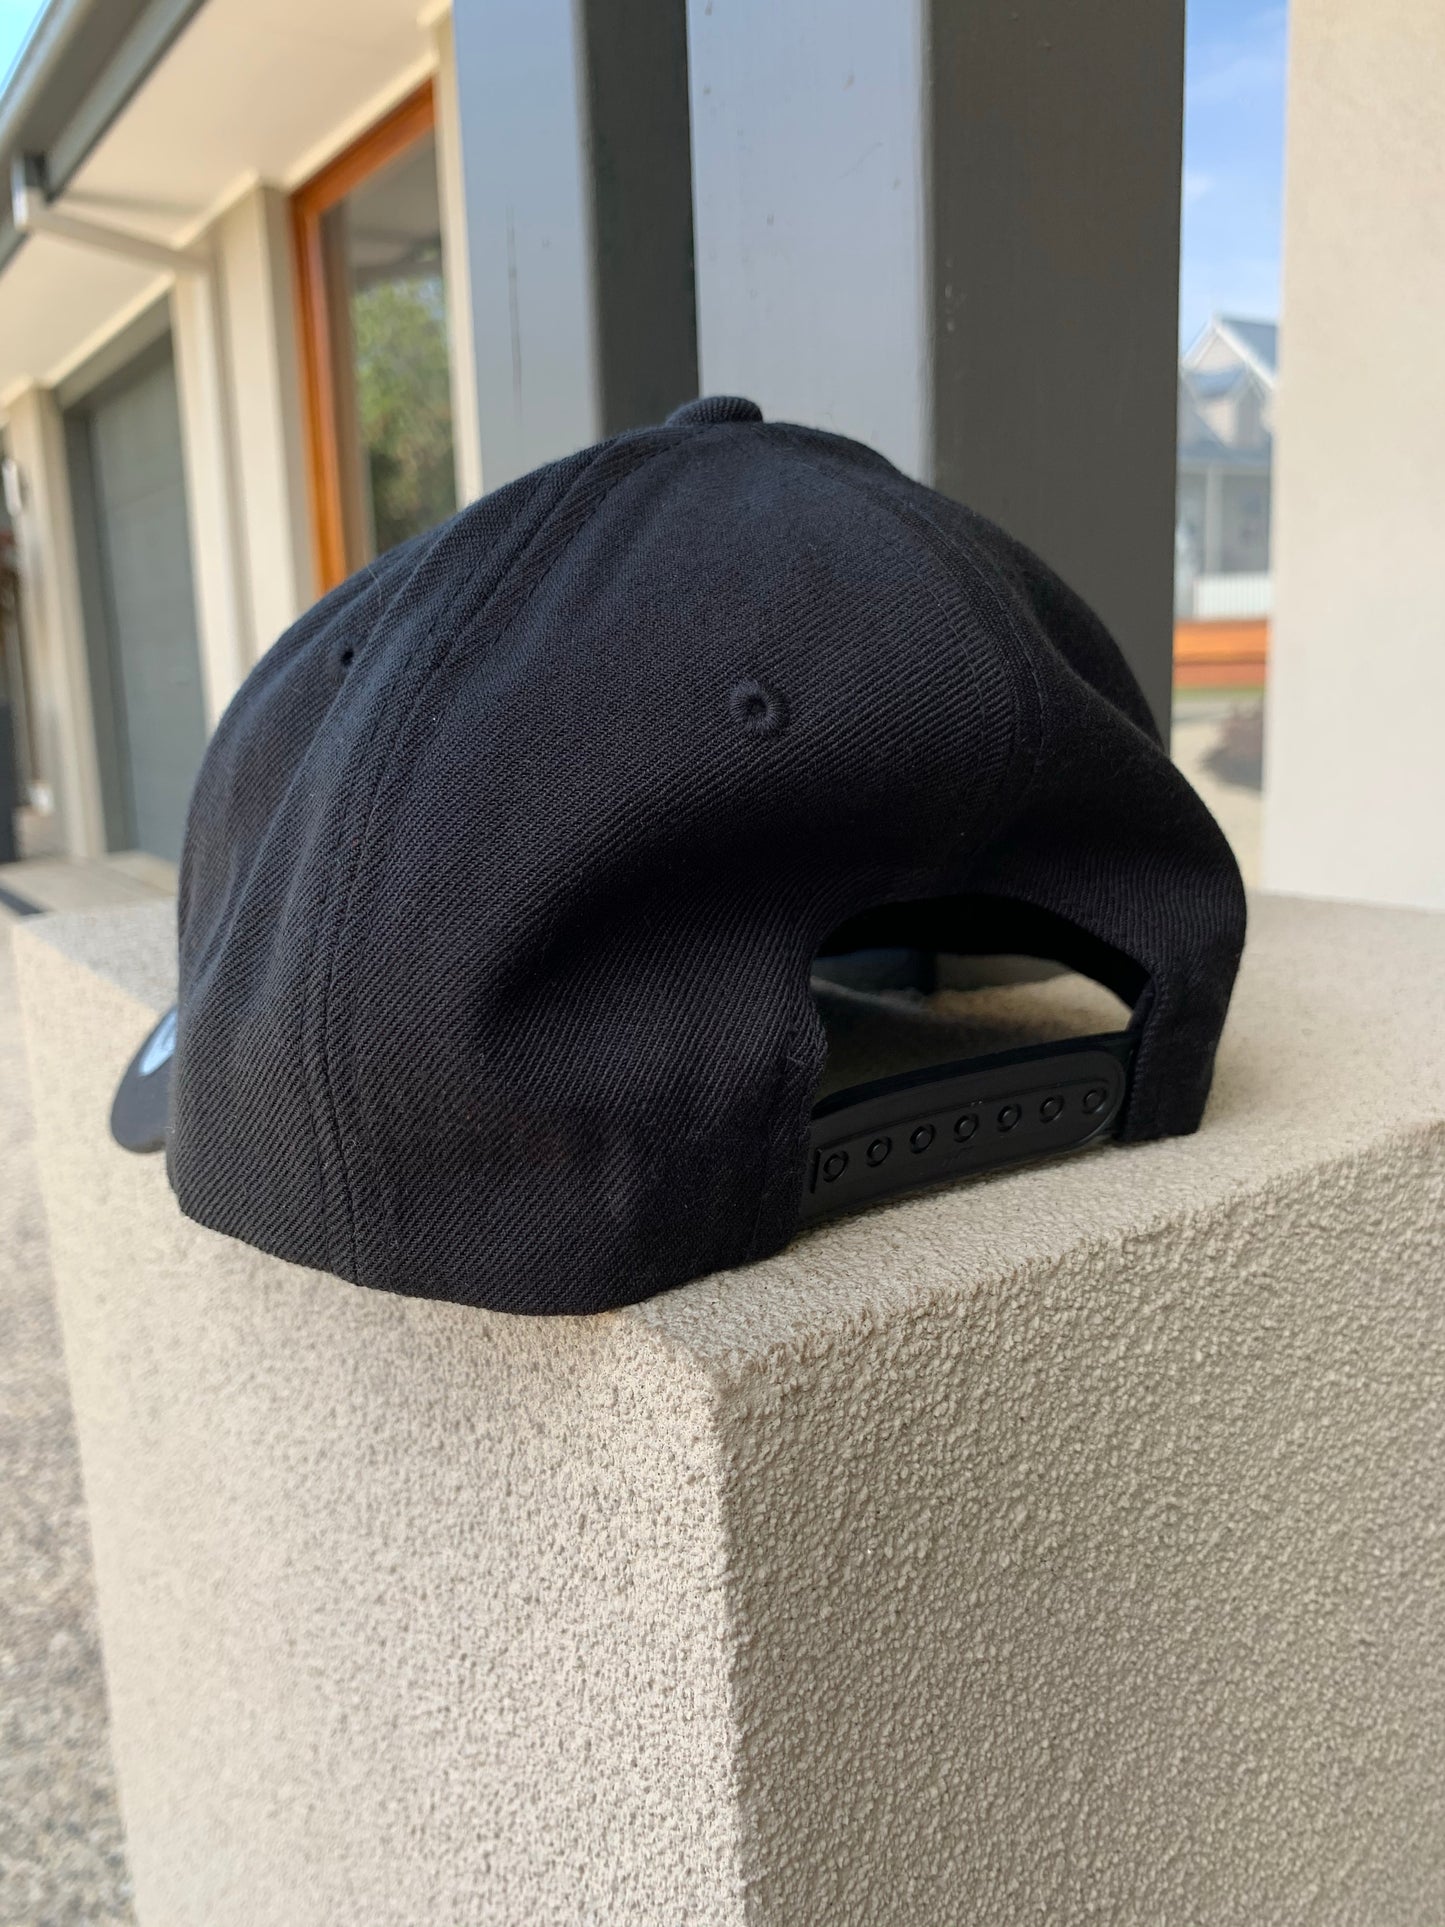 Sale! Black Cap